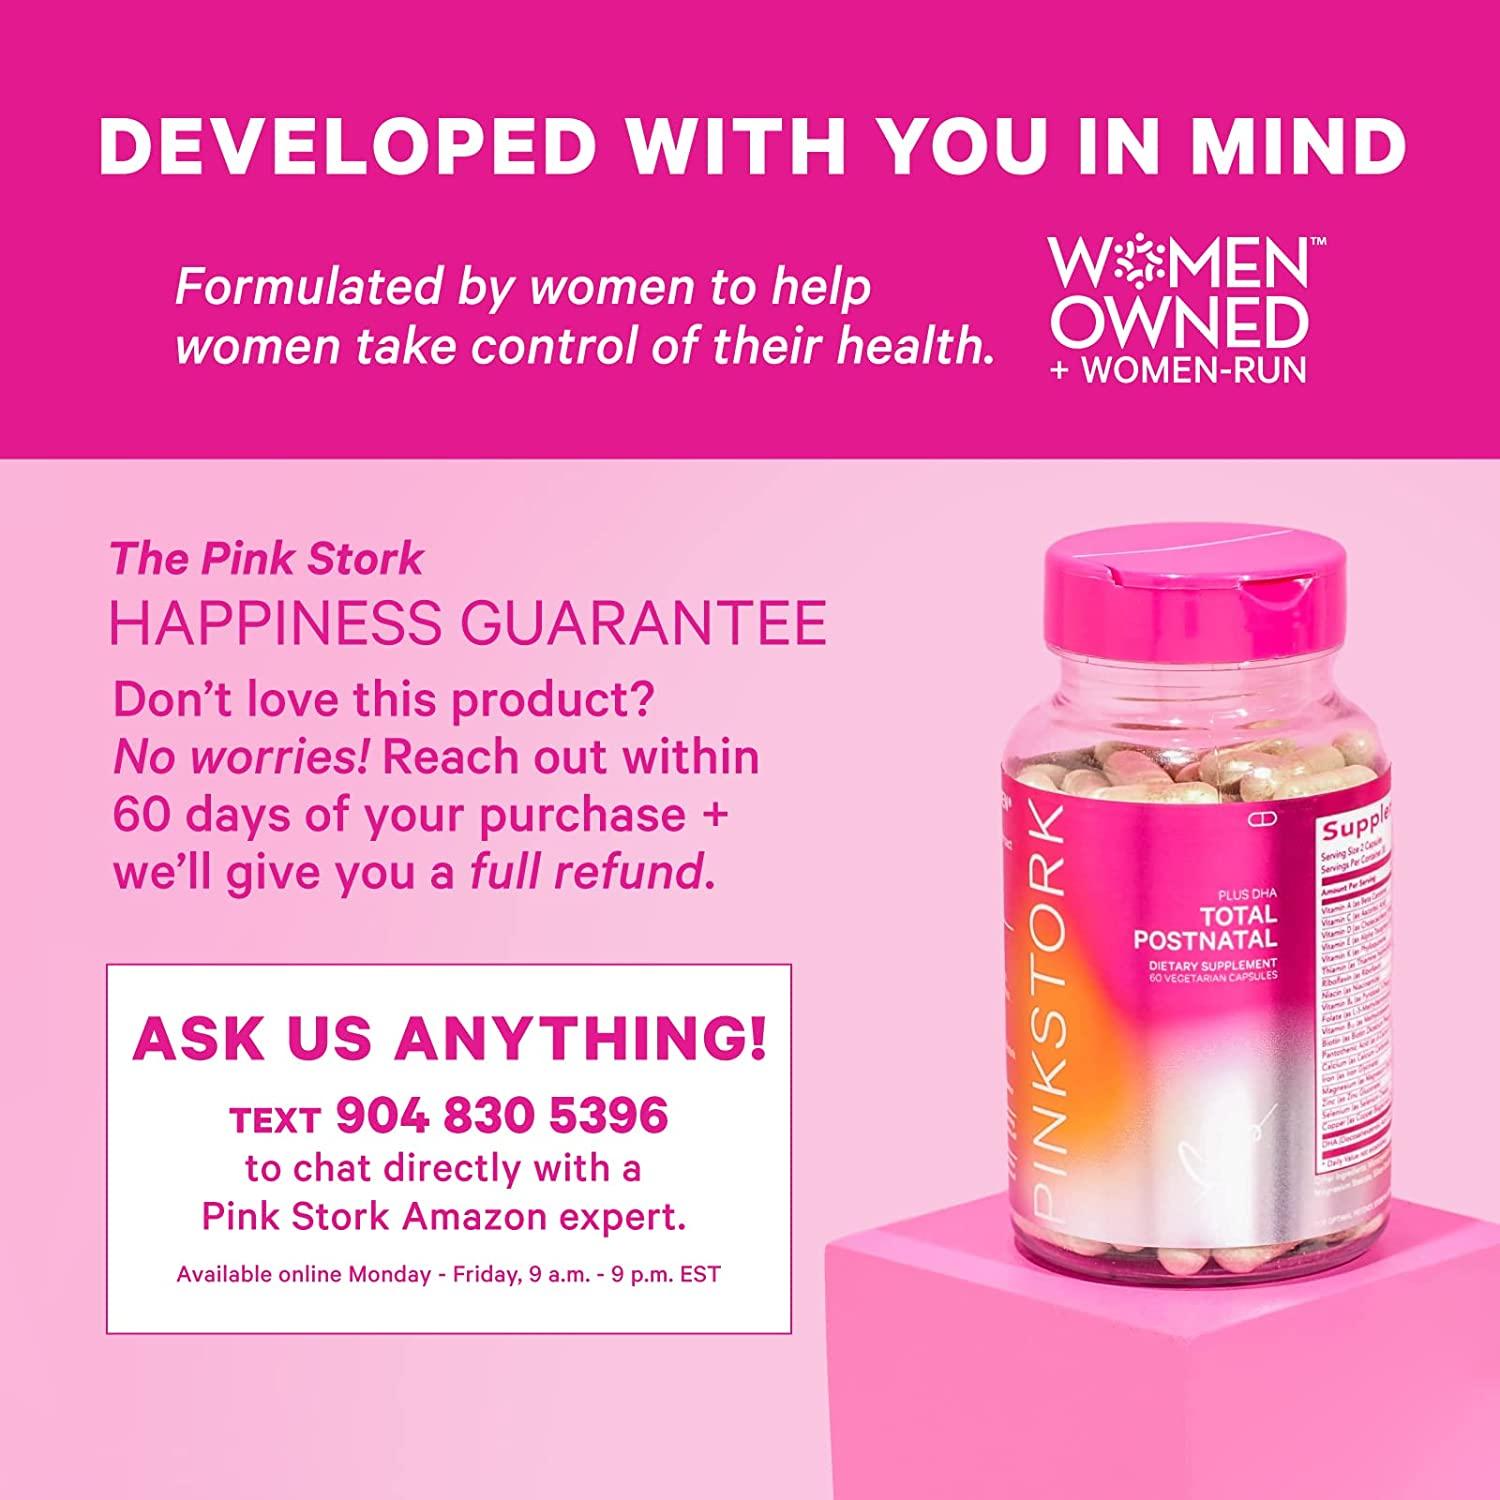 Prenatal Vitamins with DHA  Total Prenatal + DHA - Pink Stork